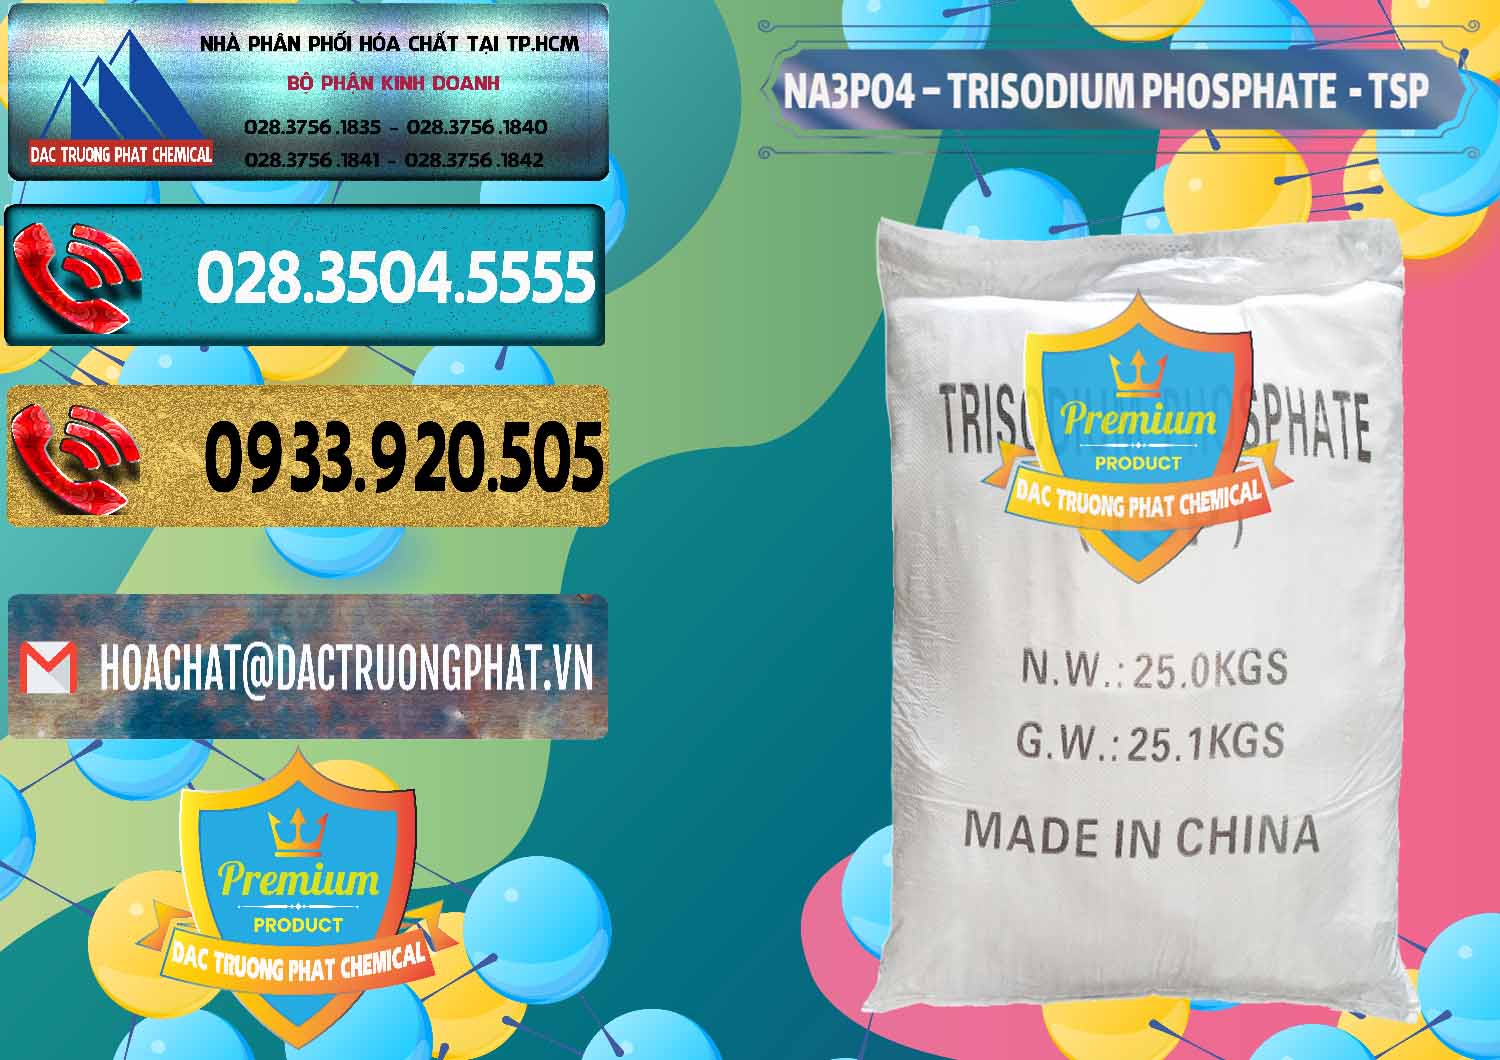 Chuyên bán ( cung ứng ) Na3PO4 – Trisodium Phosphate Trung Quốc China TSP - 0103 - Chuyên phân phối ( cung cấp ) hóa chất tại TP.HCM - hoachatdetnhuom.com